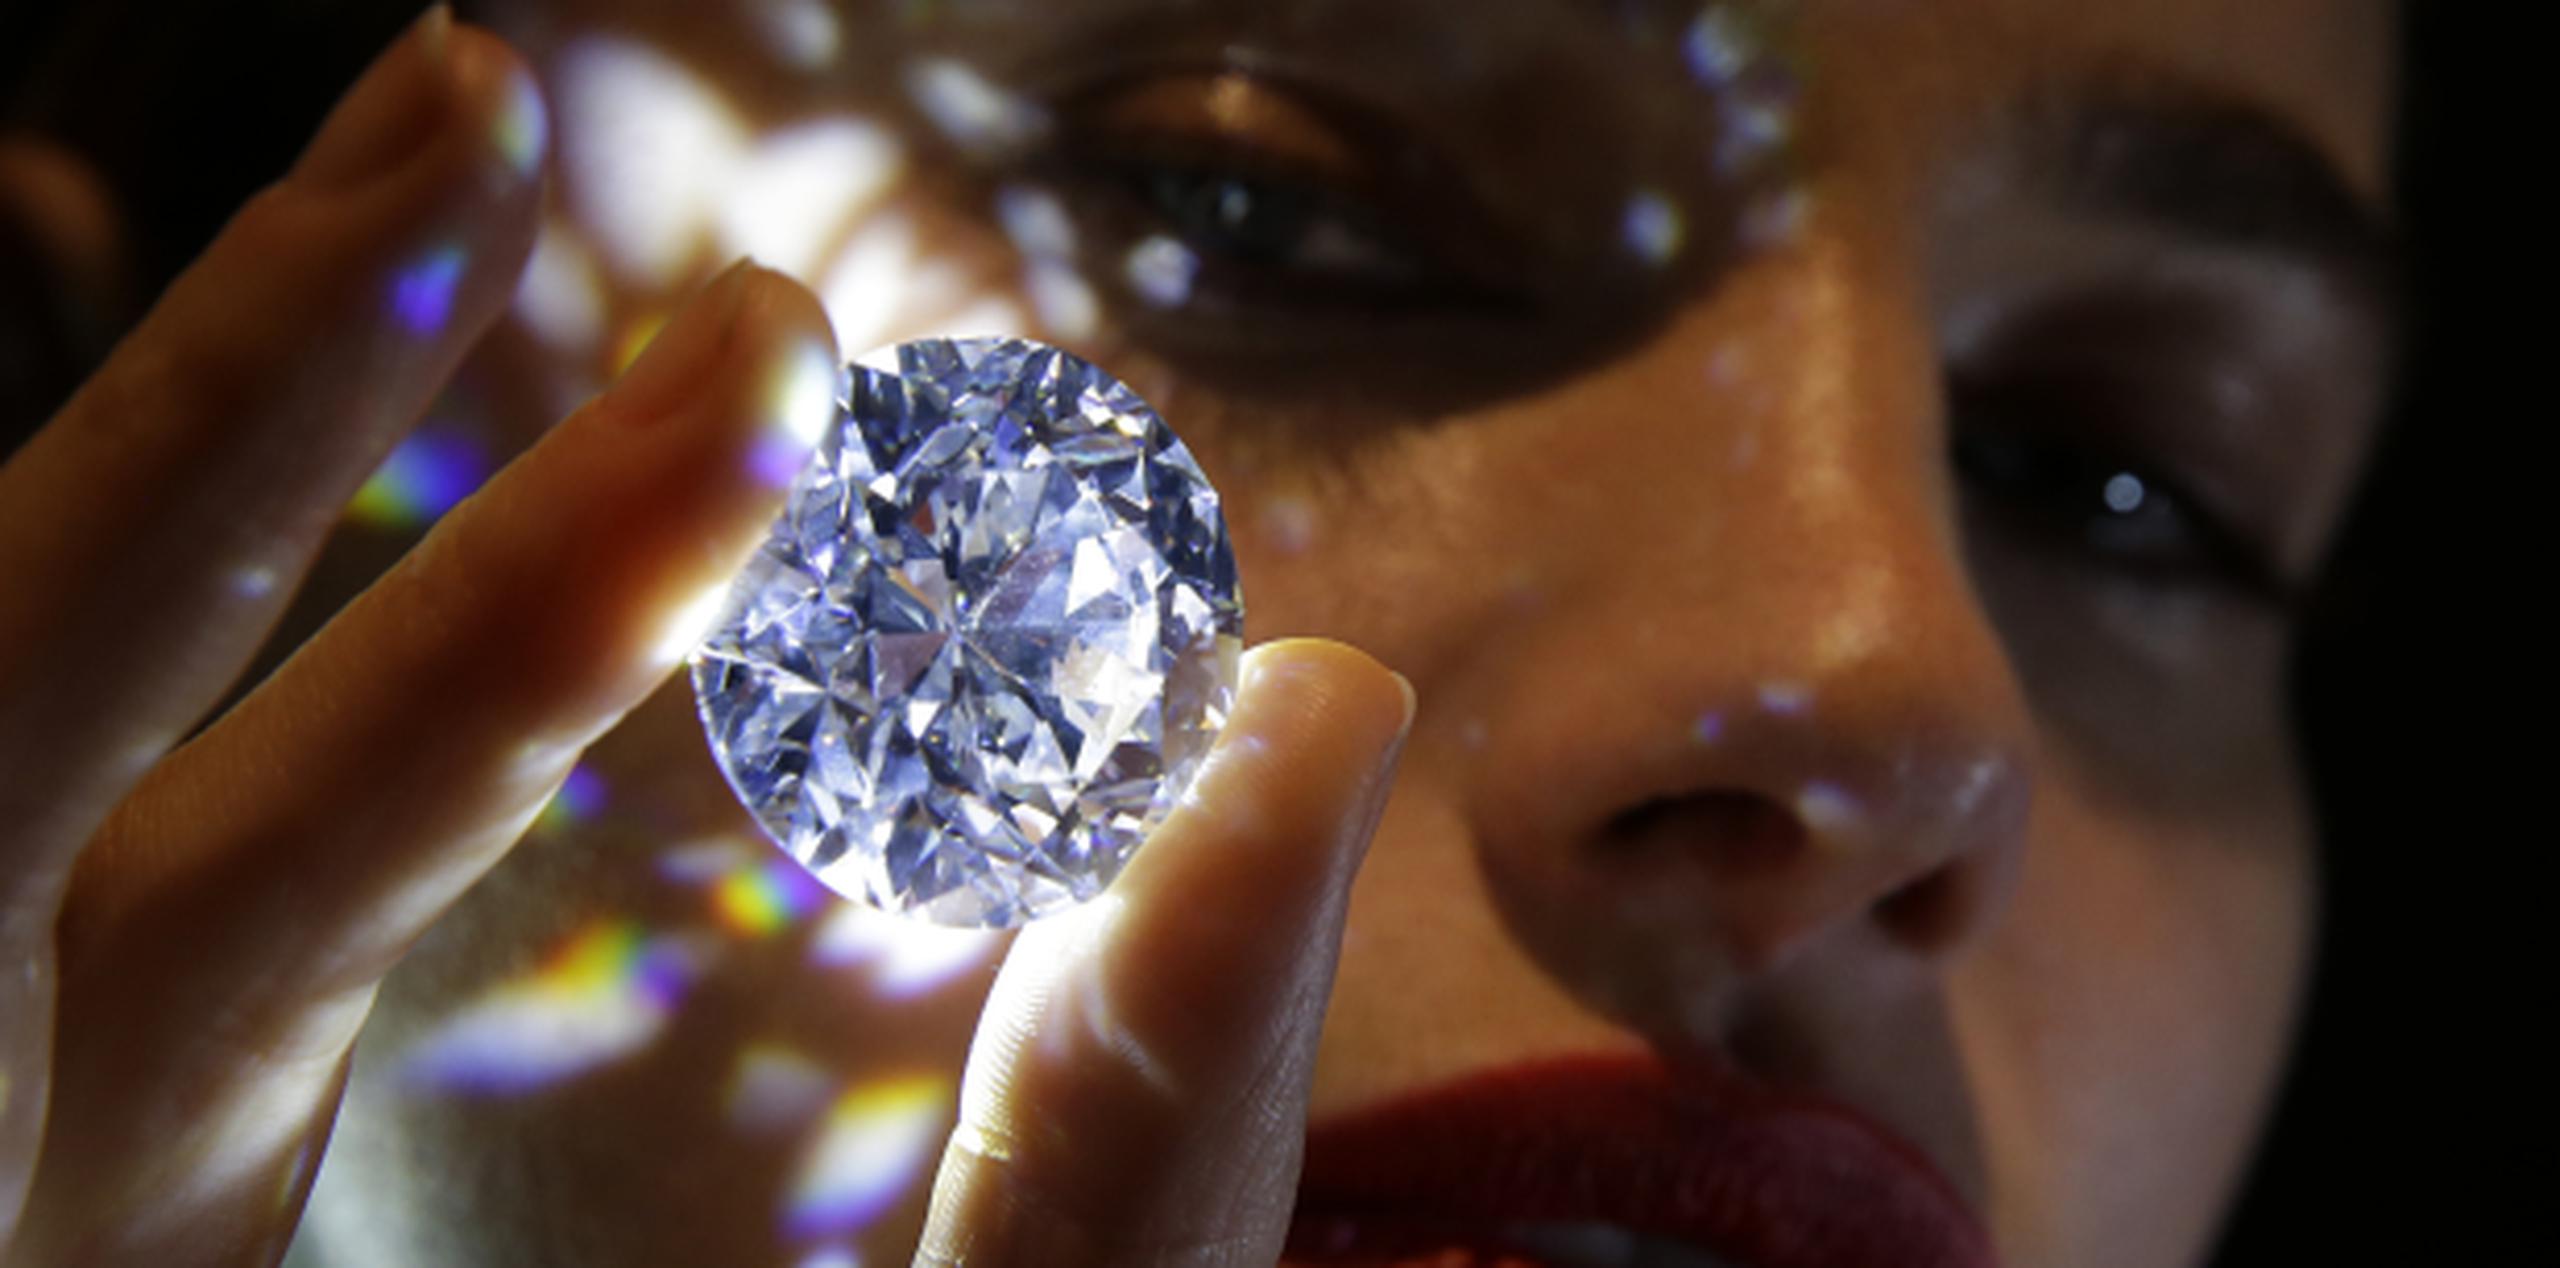 El diamante está siendo exhibido a partir del jueves en la sala de Sotheby’s en Londres y está disponible para venta privada. (AP / Alastair Grant)